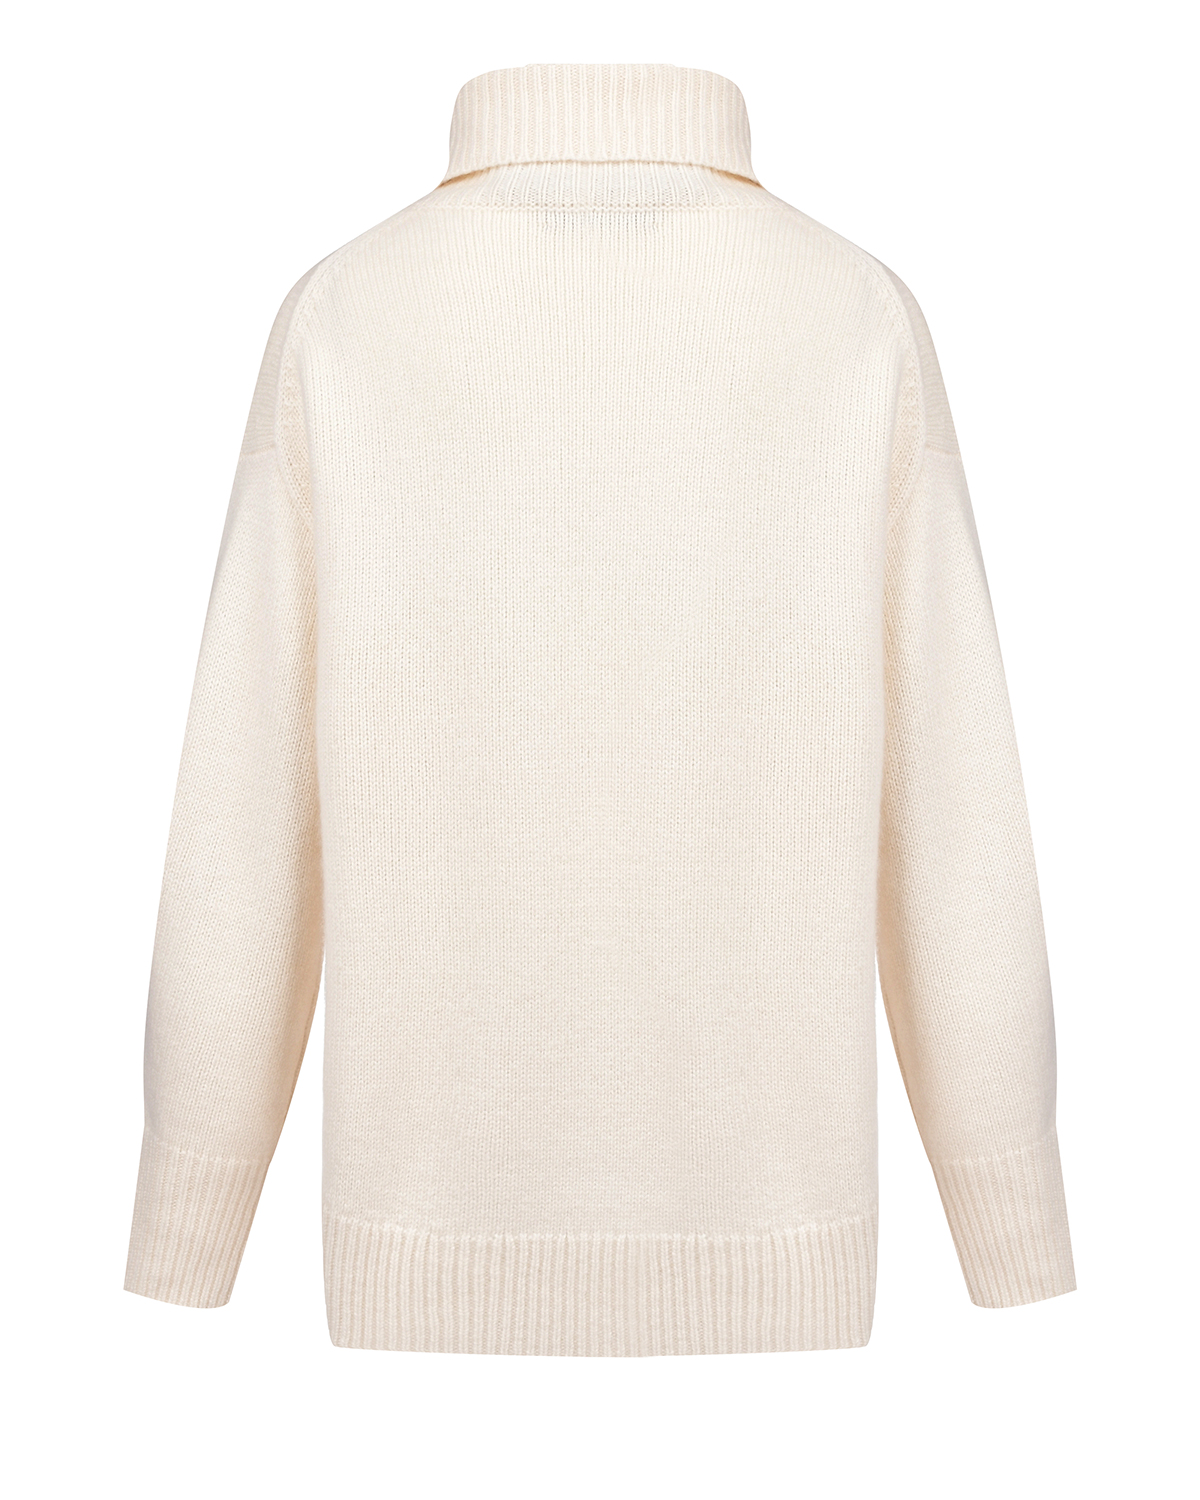 Кашемировый свитер молочного цвета Arch4, размер 38 - фото 5